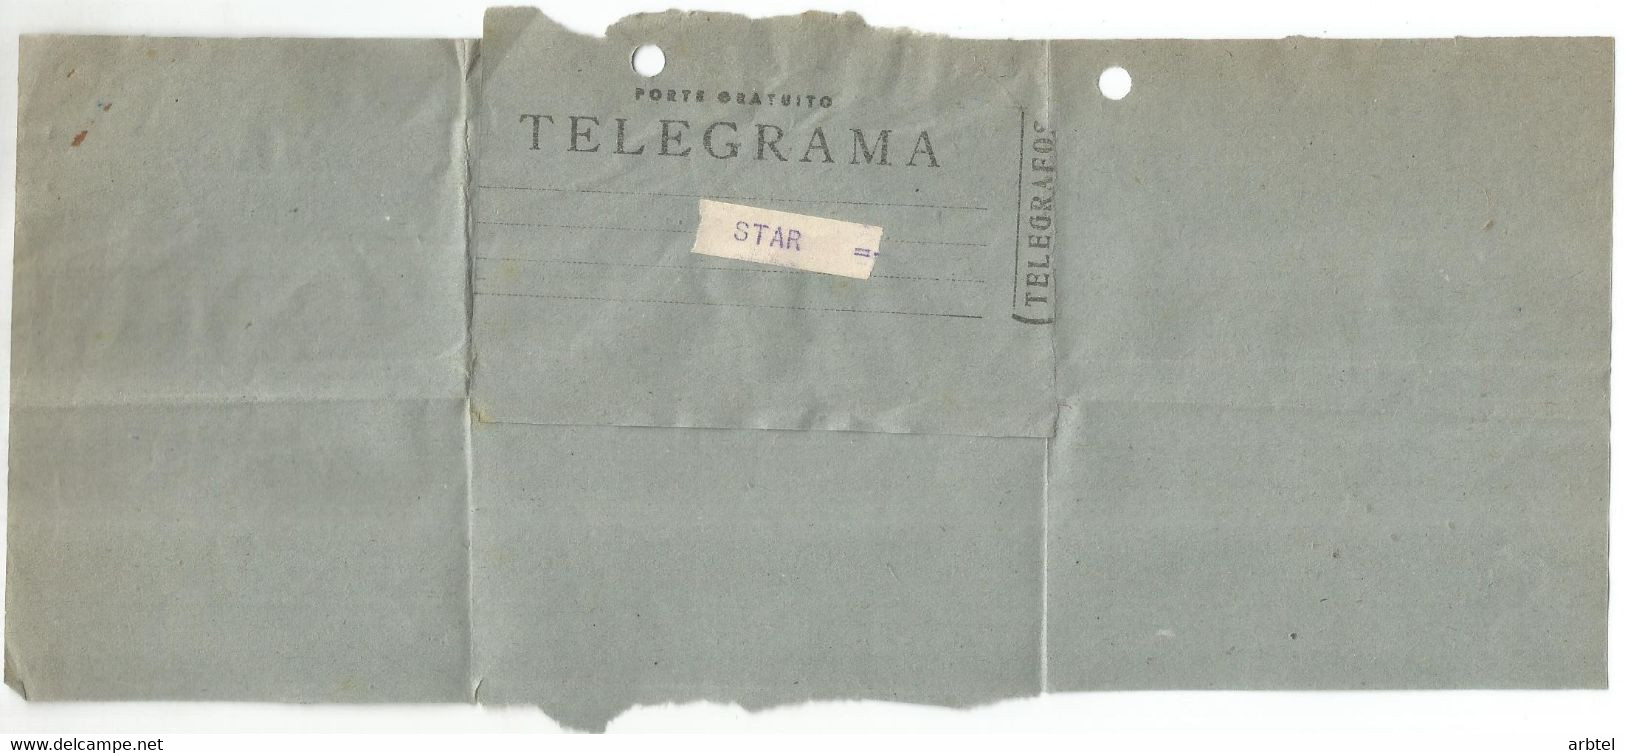 TELEGRAMA DE BARCELONA A EIBAR FABRICA DE ARMAS STAR MAT TELECOMNUNICACIONES GUN FACTORY - Télégraphe